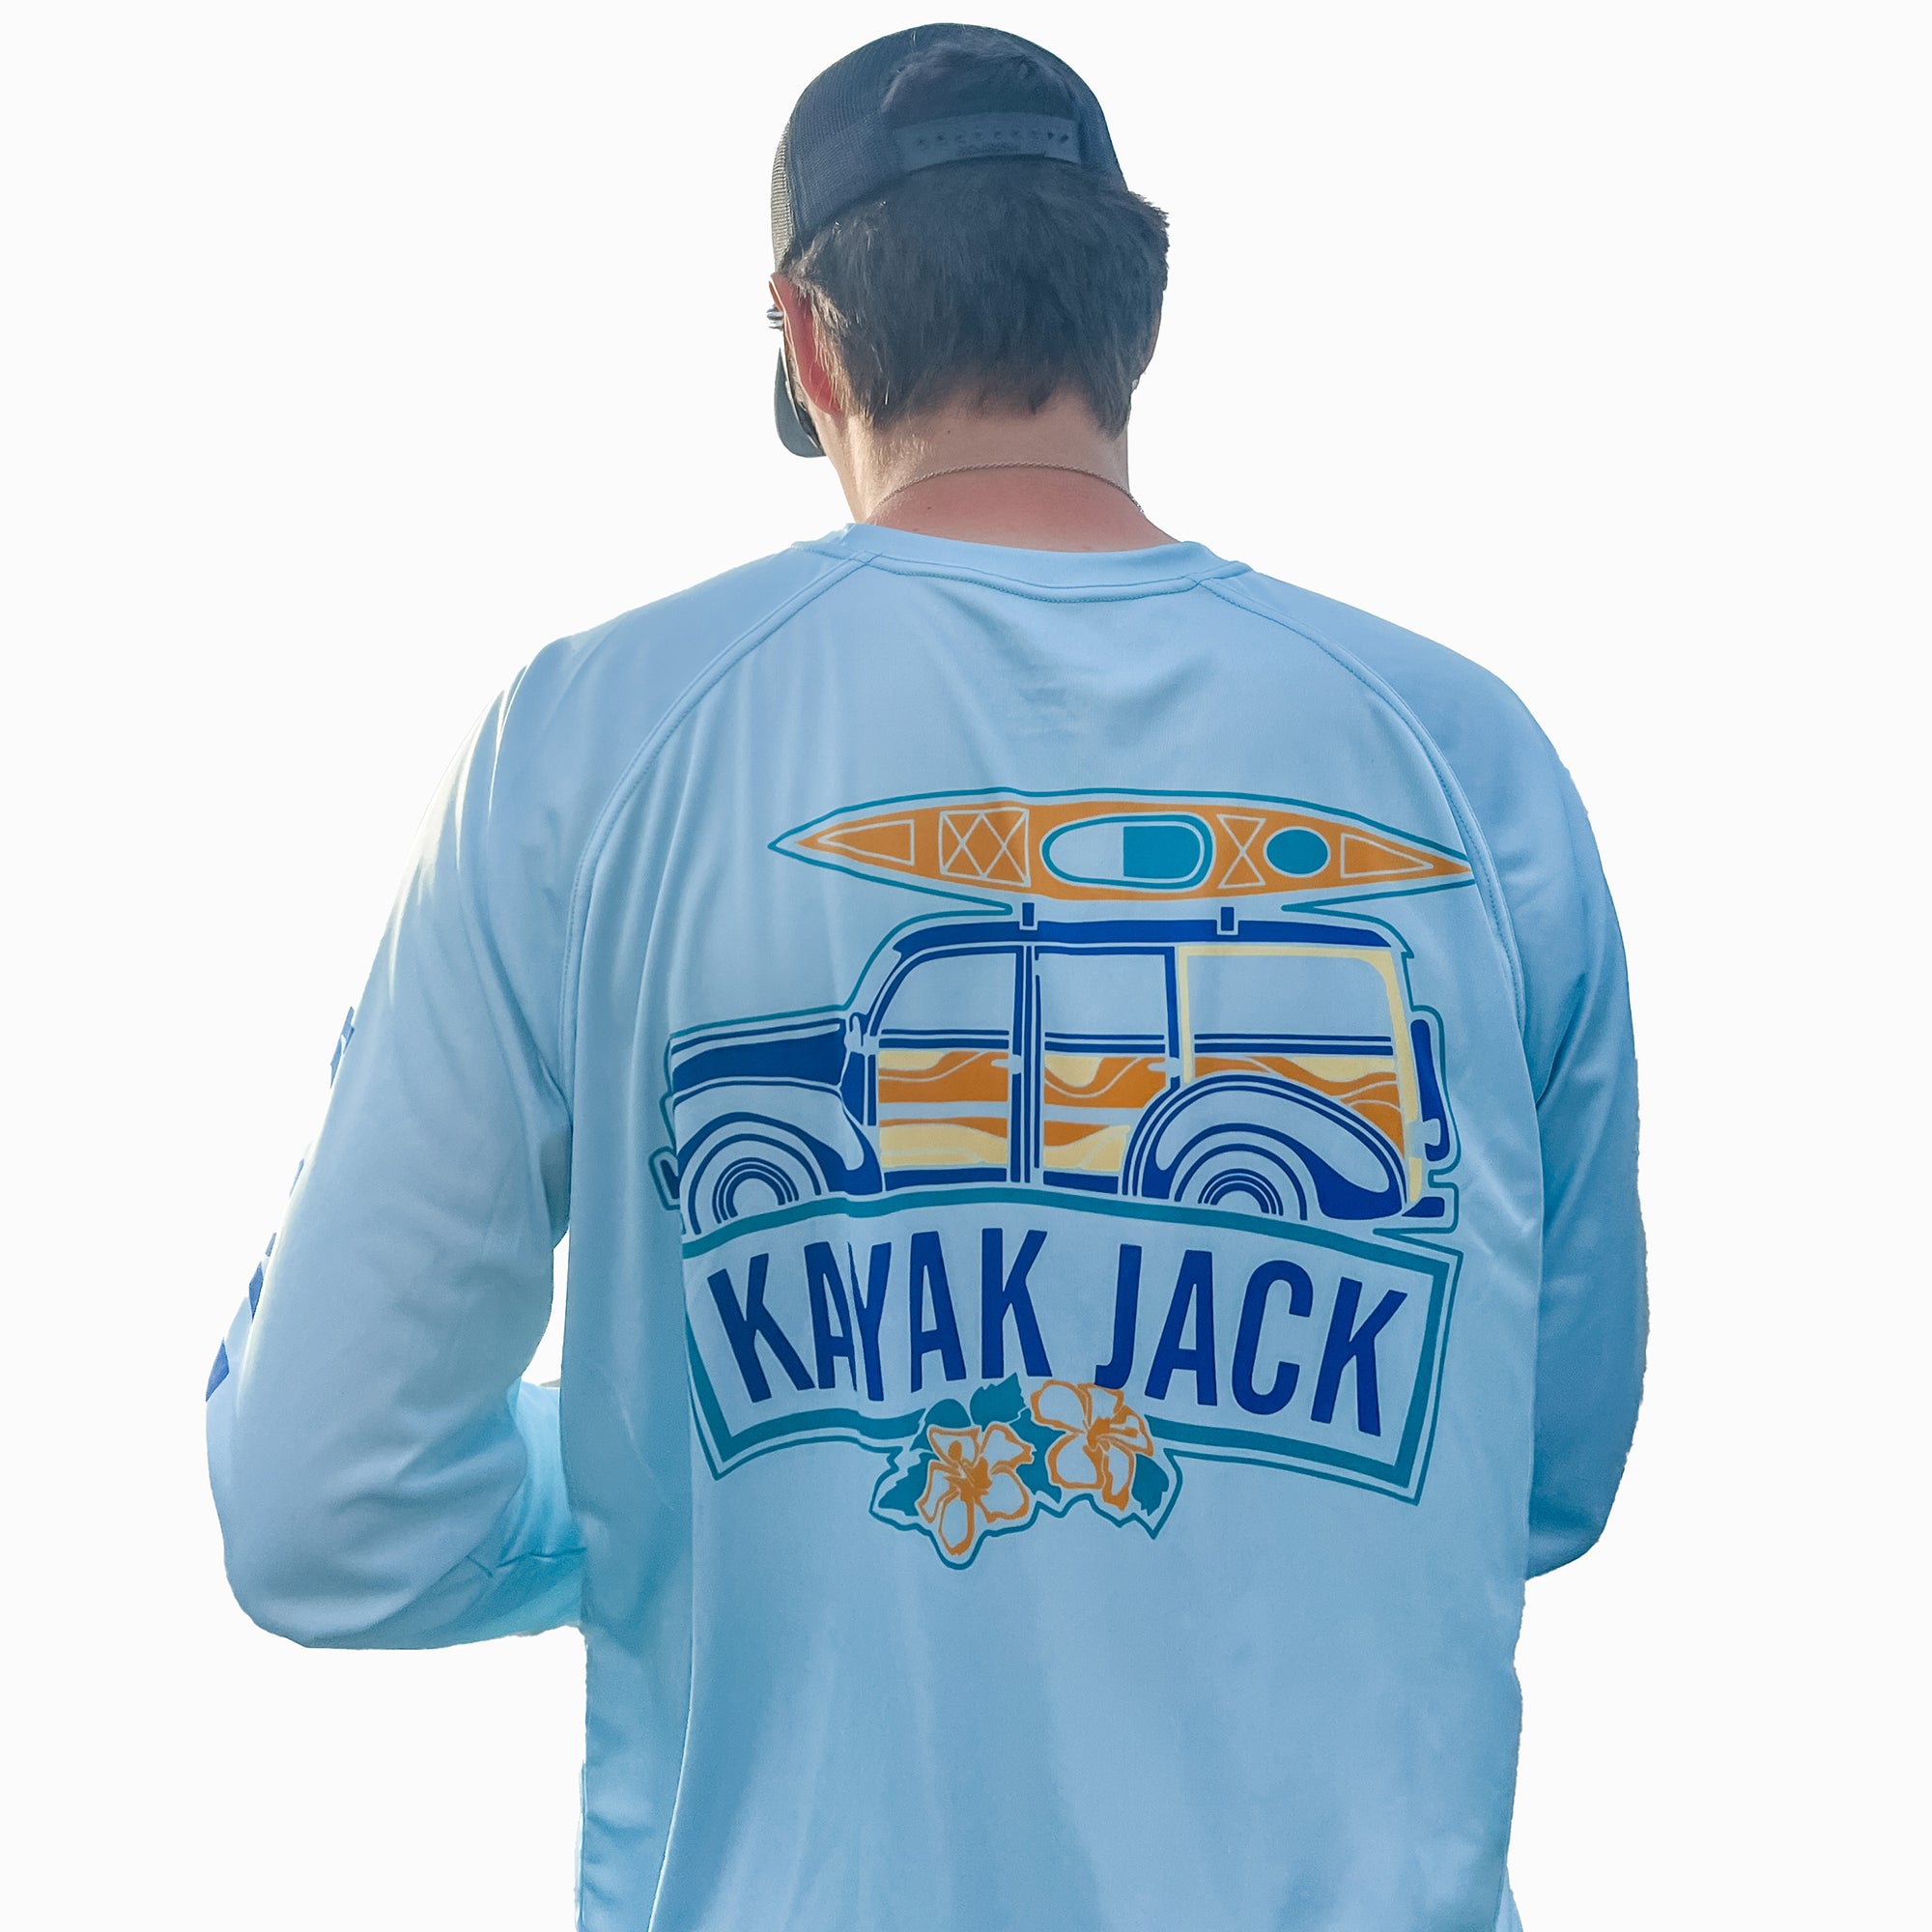 Kayak Fishing Performance SPF Shirt Blue PFG - Kayak Jack